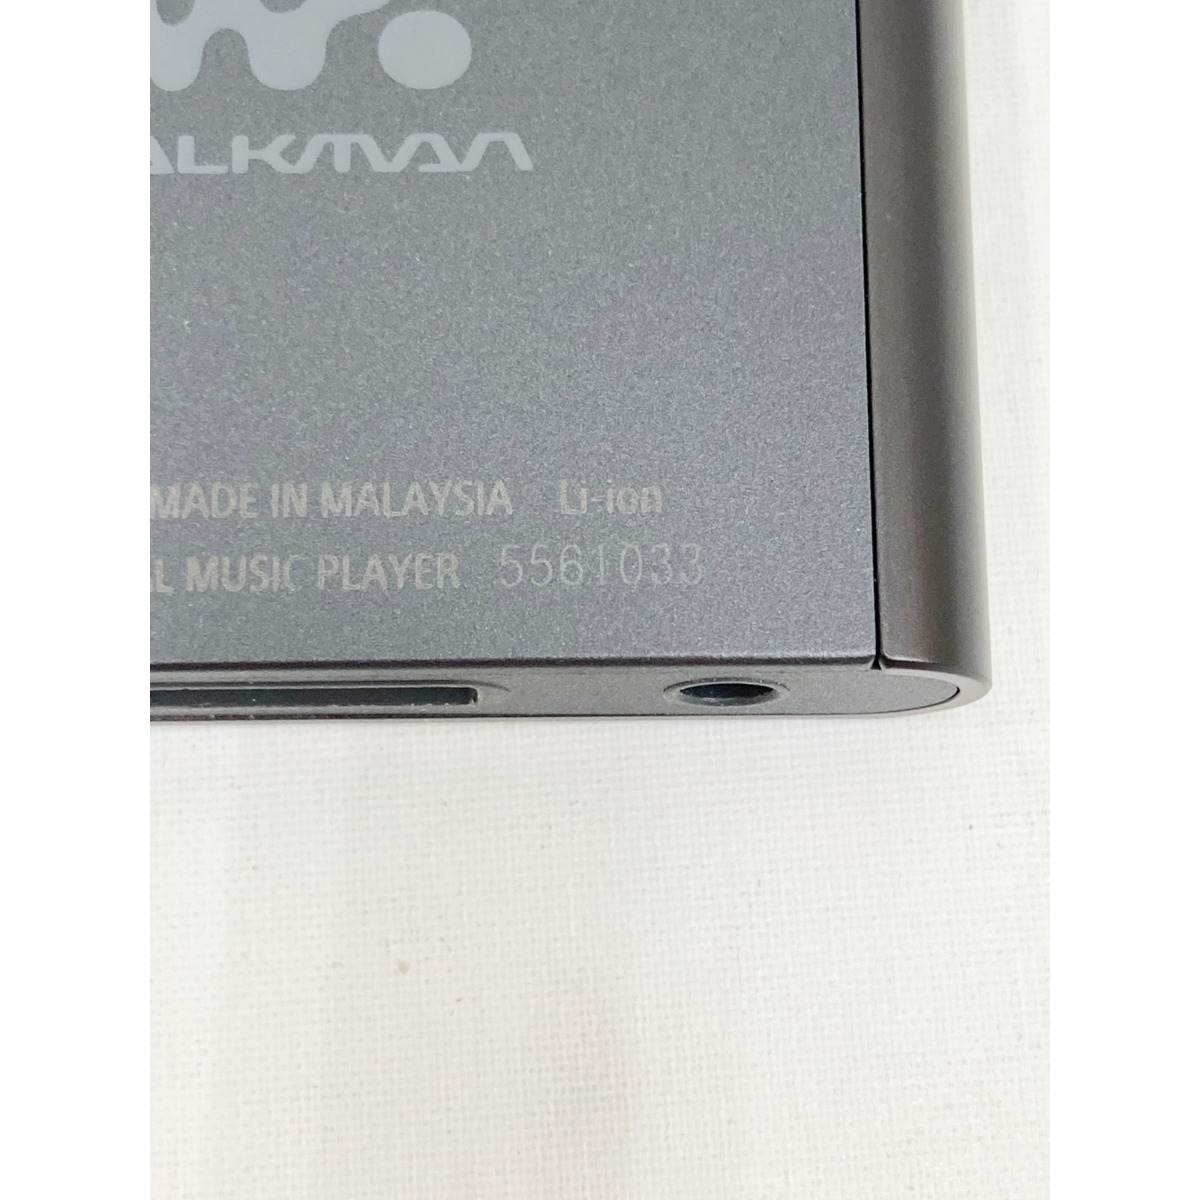 日本最大の WALK ソニー SONY 〇〇 MAN やや傷や汚れあり NW-A55 16GB